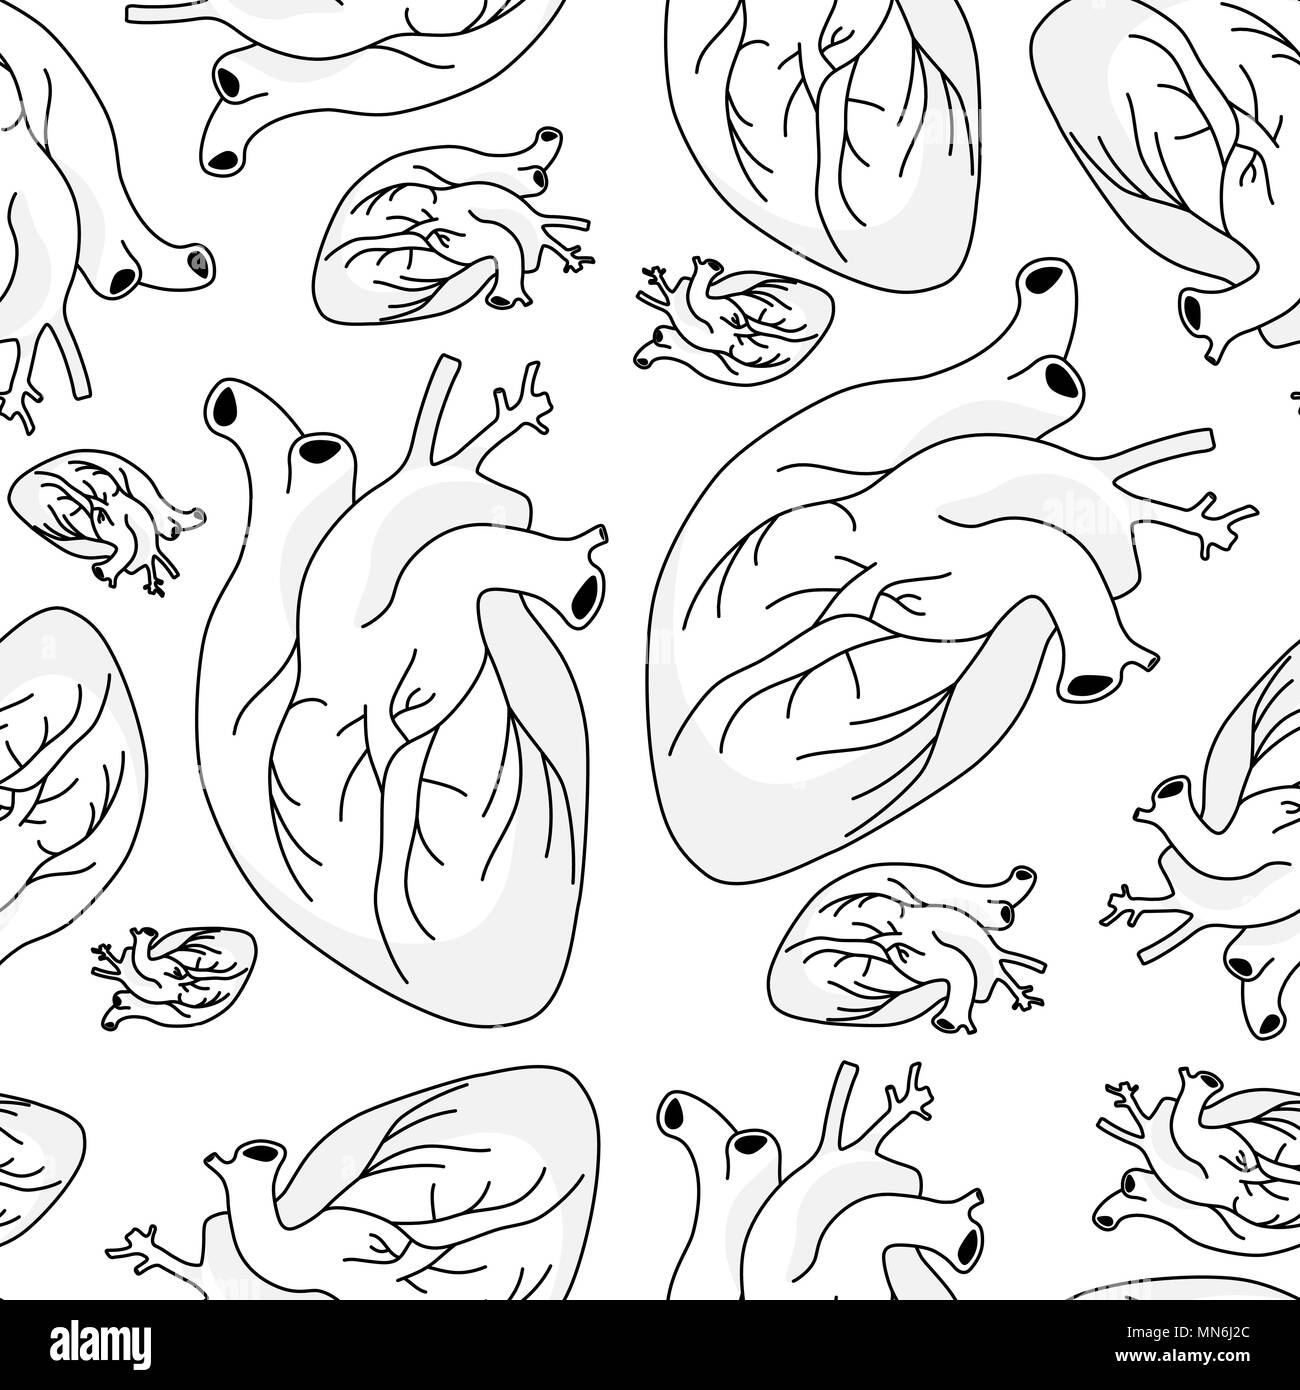 Wallpapers Graphic organi interni cuore di diverse dimensioni in modo caotico. Modello senza giunture Illustrazione Vettoriale